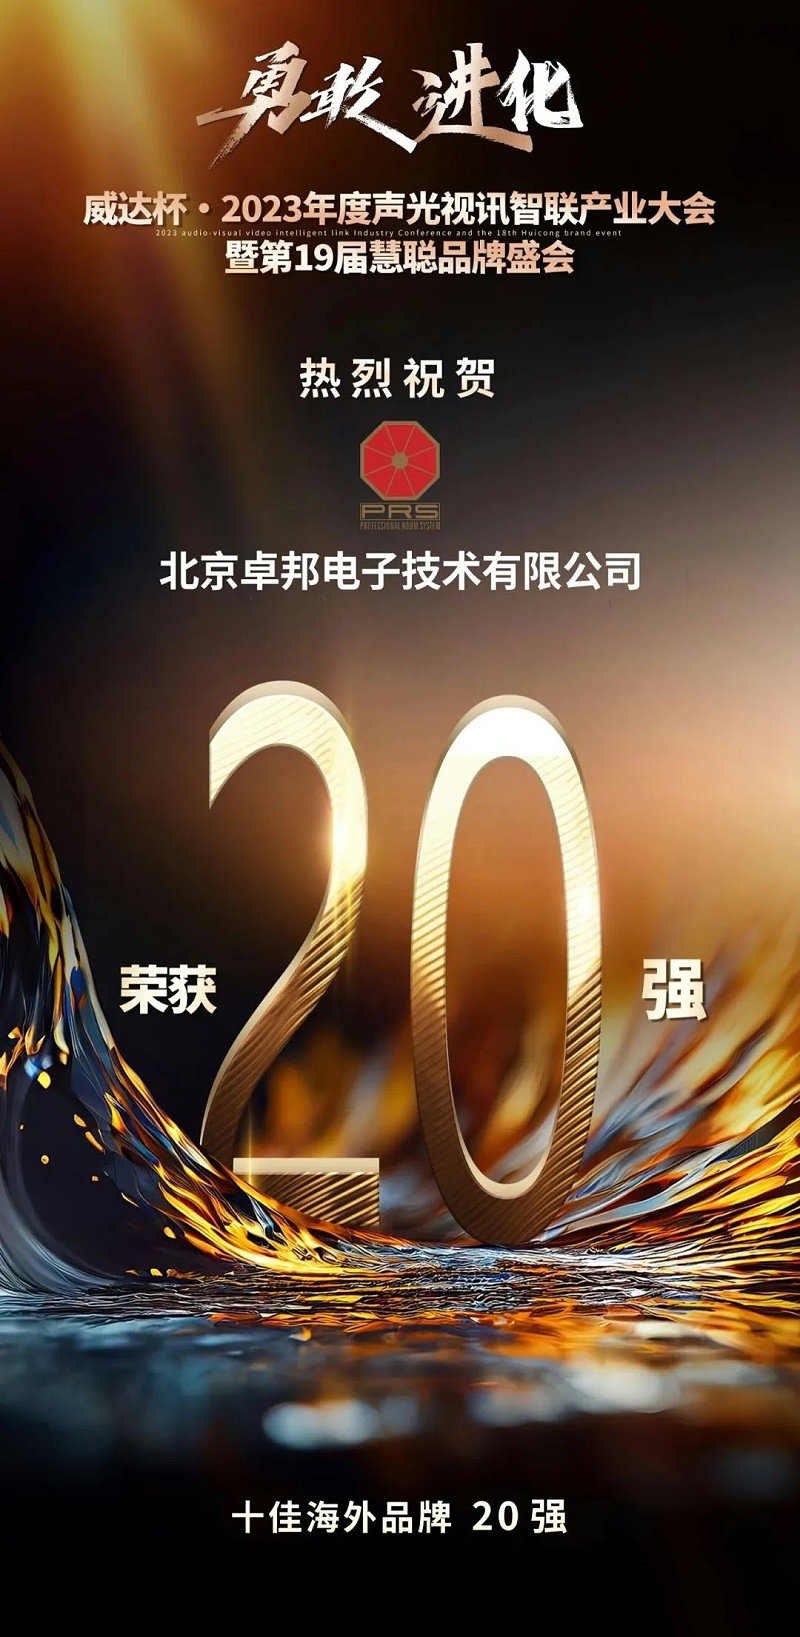 重磅揭晓！ZOBO卓邦旗下PRS品牌晋级2023声光视讯行业20强品牌